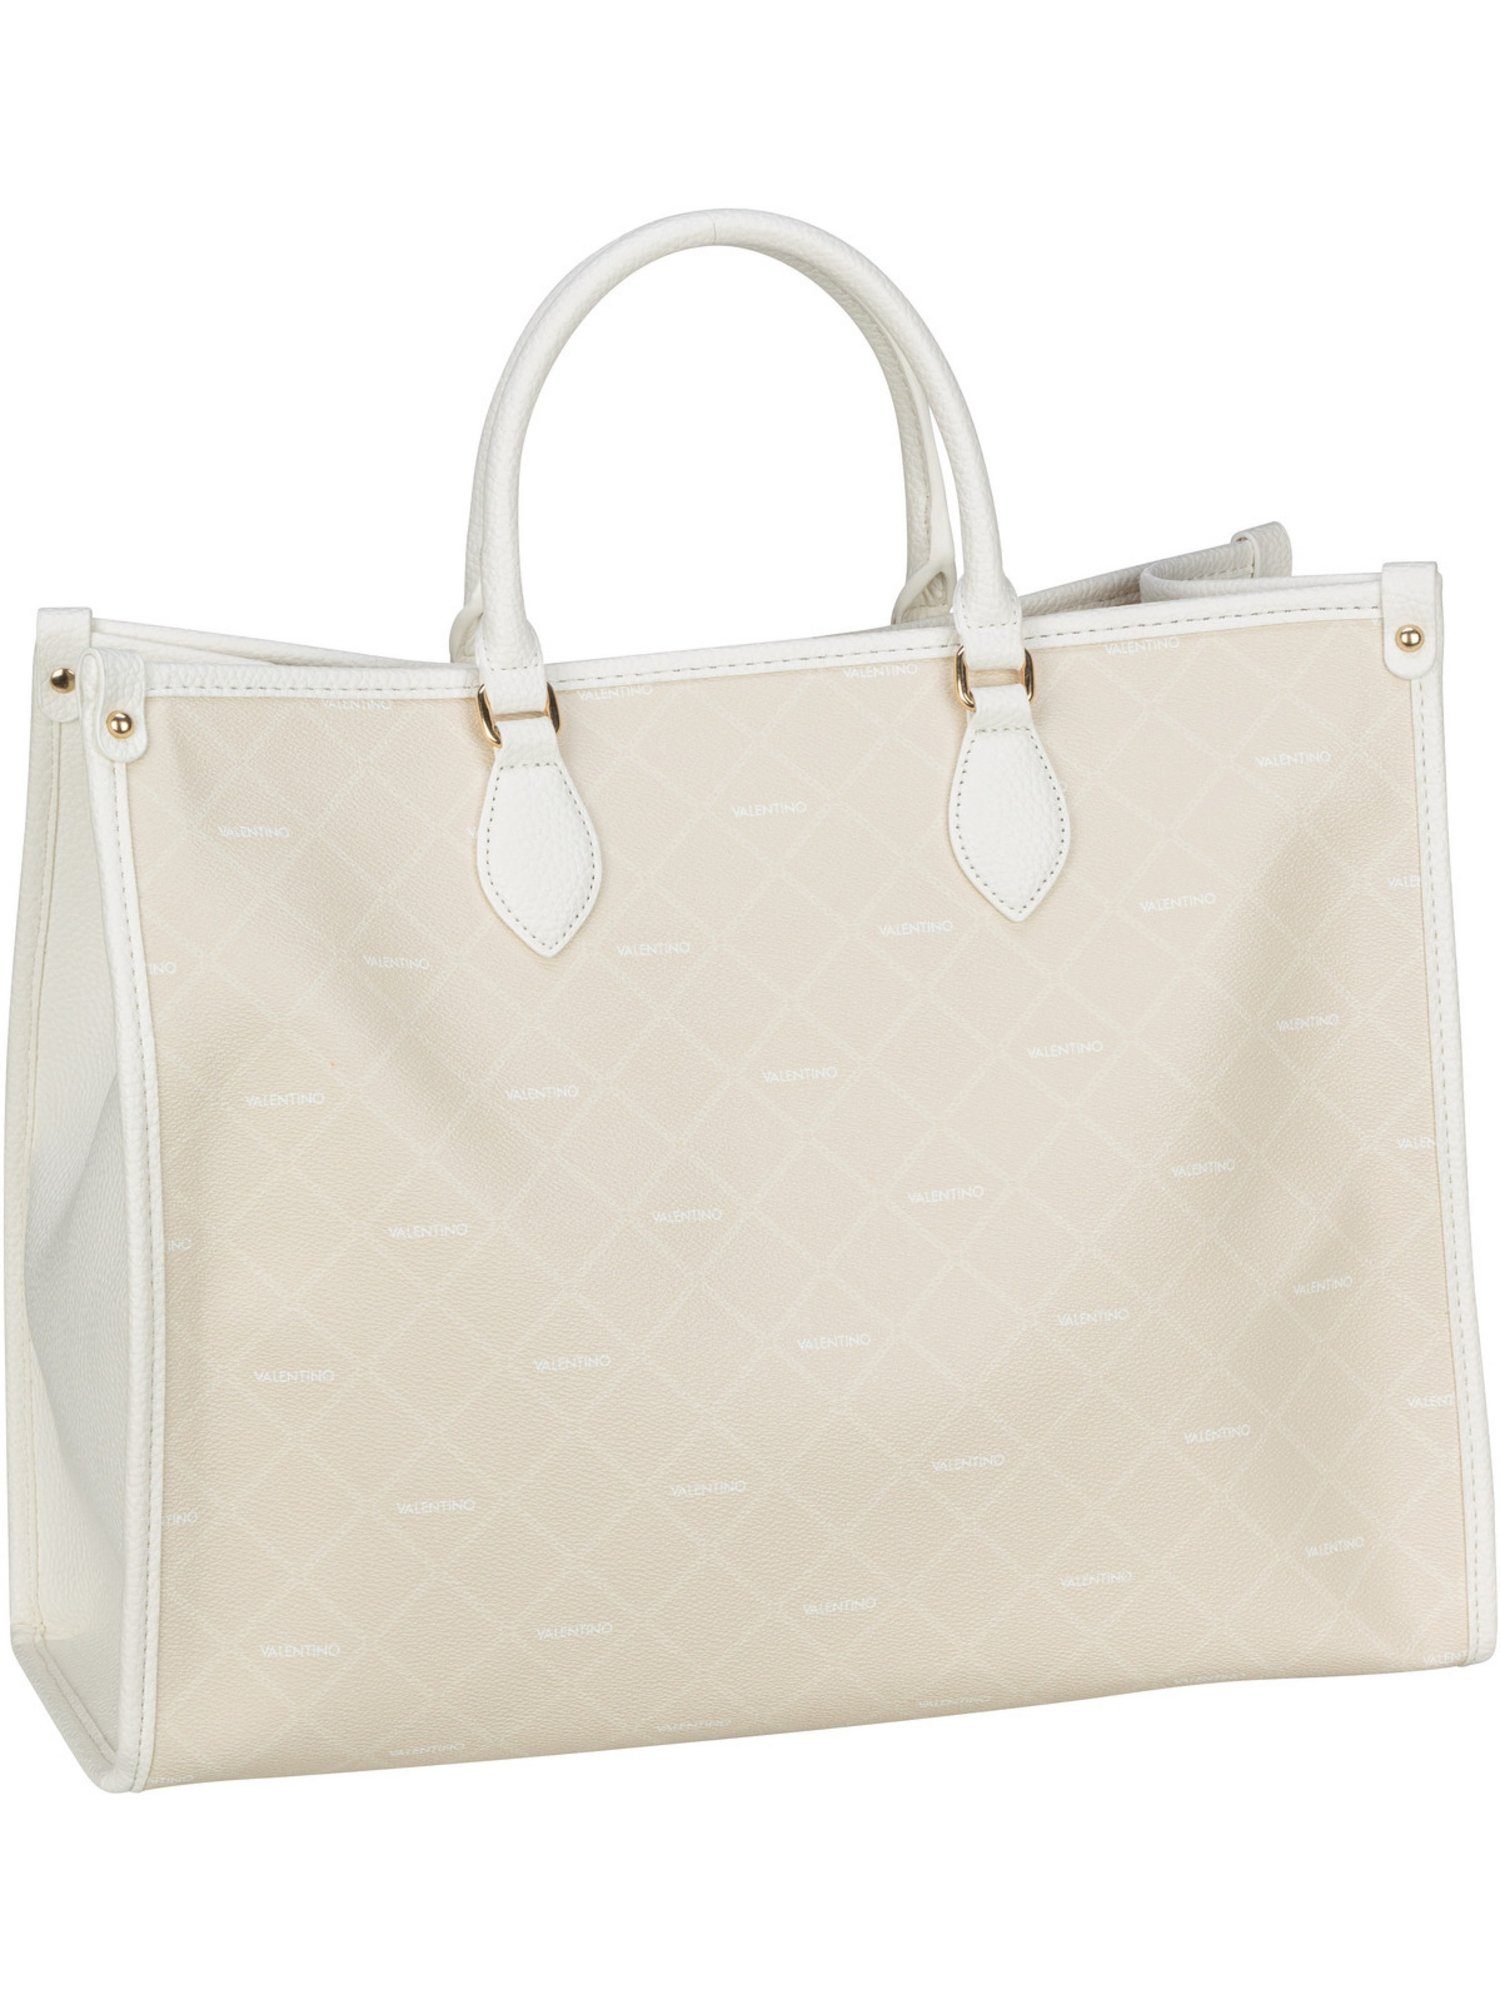 VALENTINO BAGS Handtasche »Bar Shopping C01«, Shopper online kaufen | OTTO